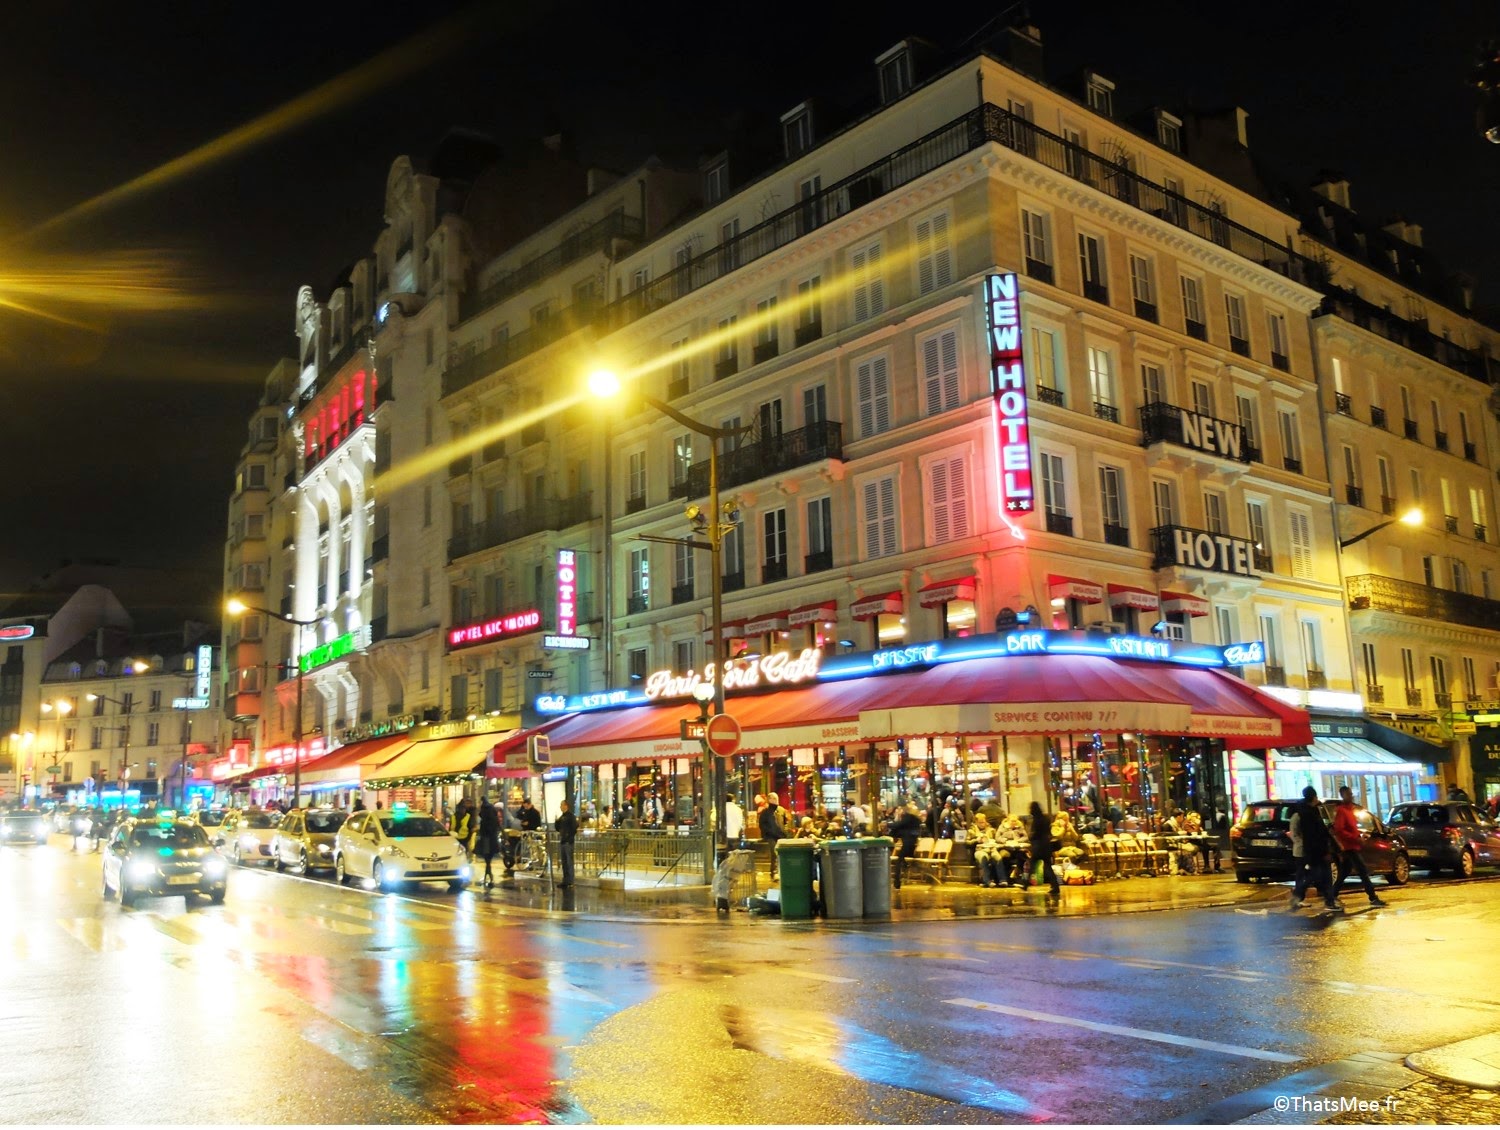 néons Gare du Nord Paris rue de Dunkerque enseignes lumineuses ThatsMee.fr